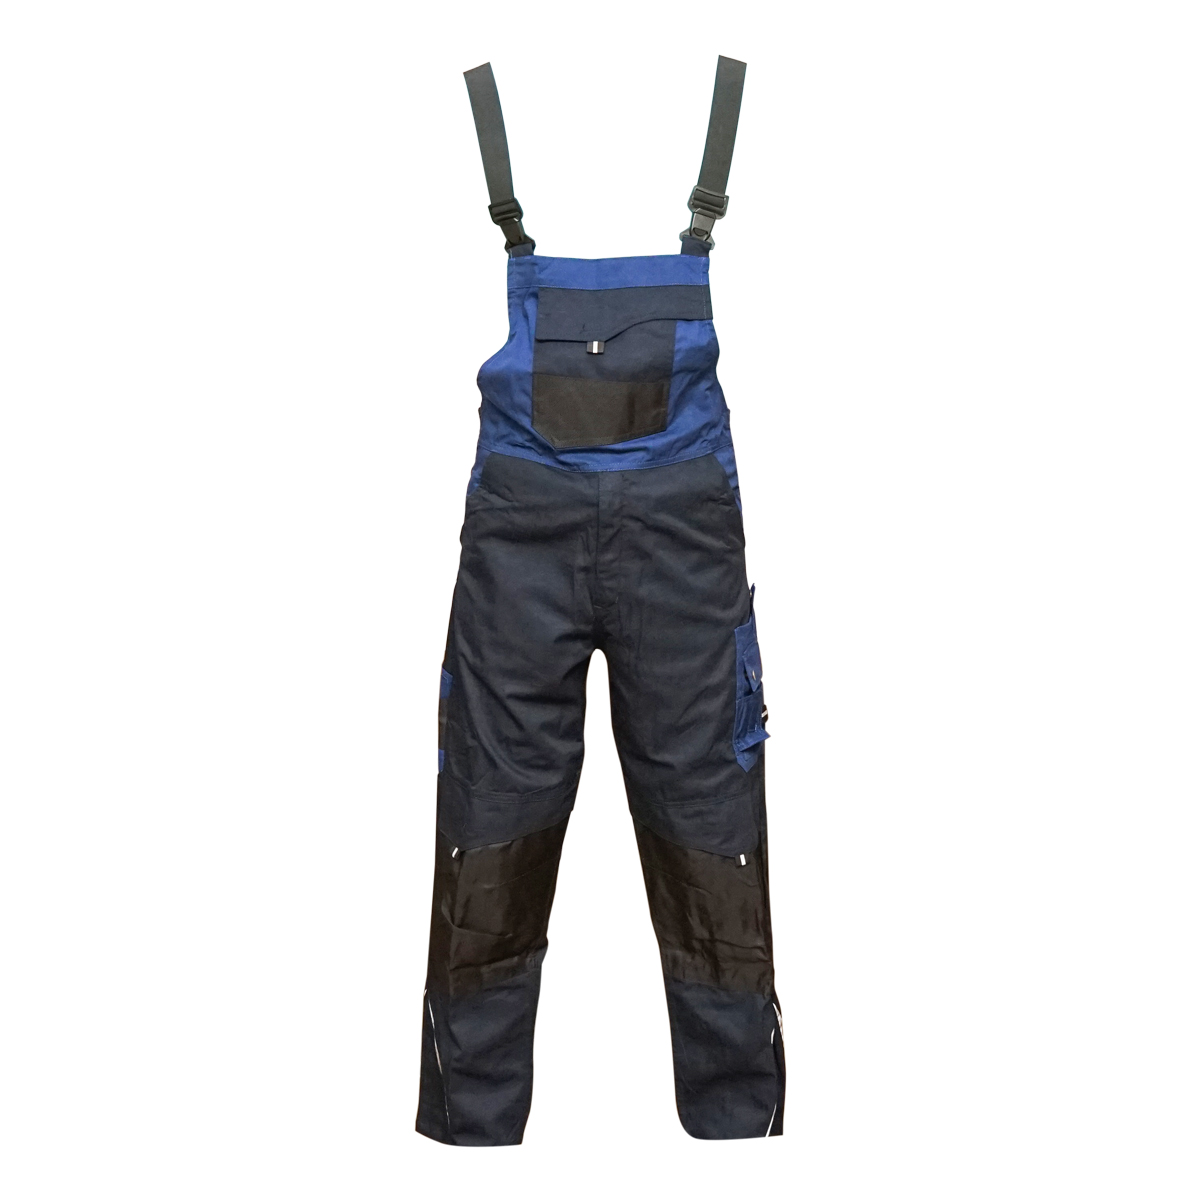 Pantaloni de lucru cu pieptar, salopeta din poliester cu bumbac, albastru navy, L Breckner Germany